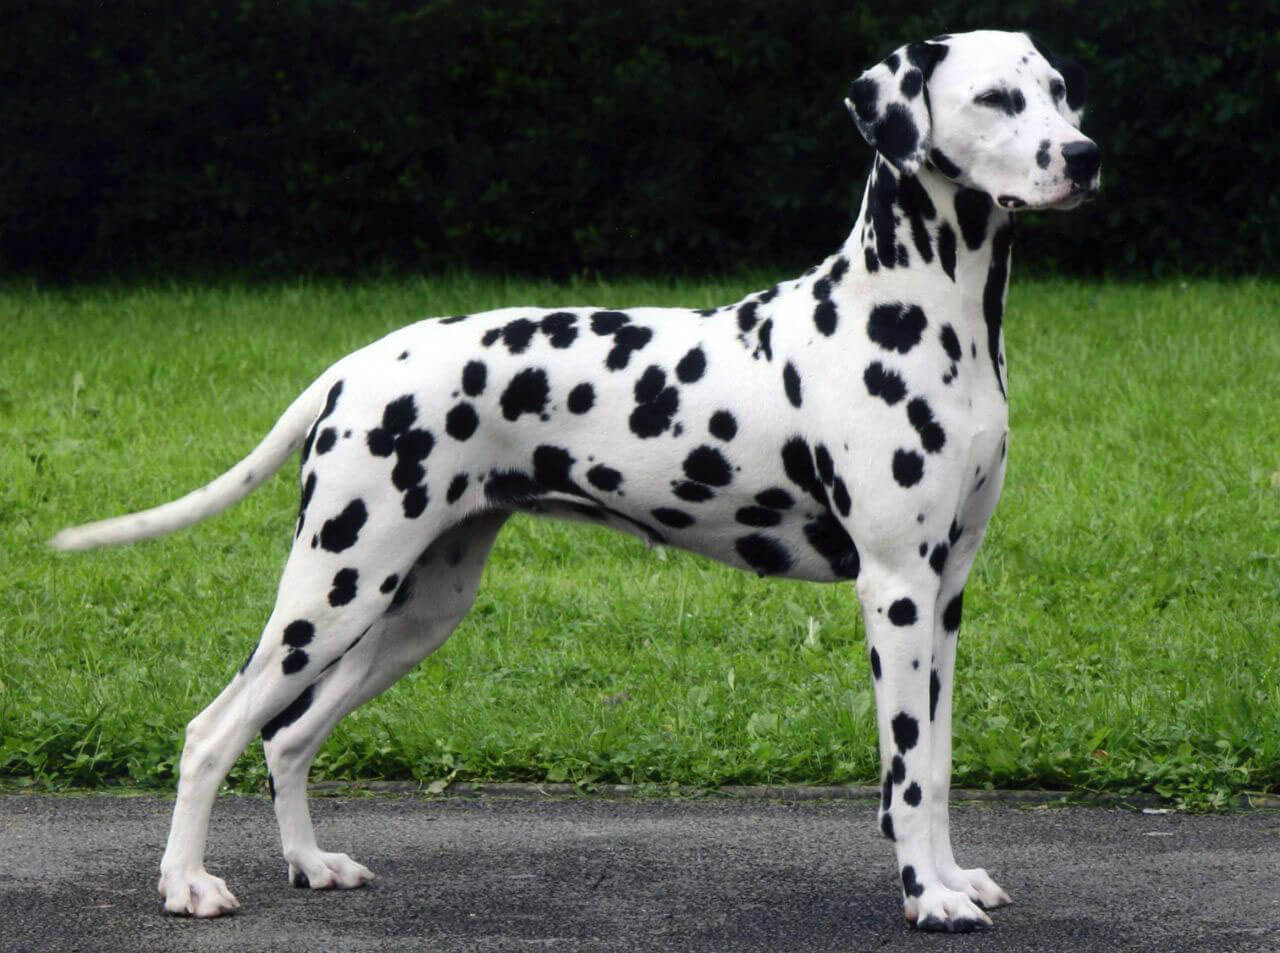 Dalmatian All Big Dog Breeds